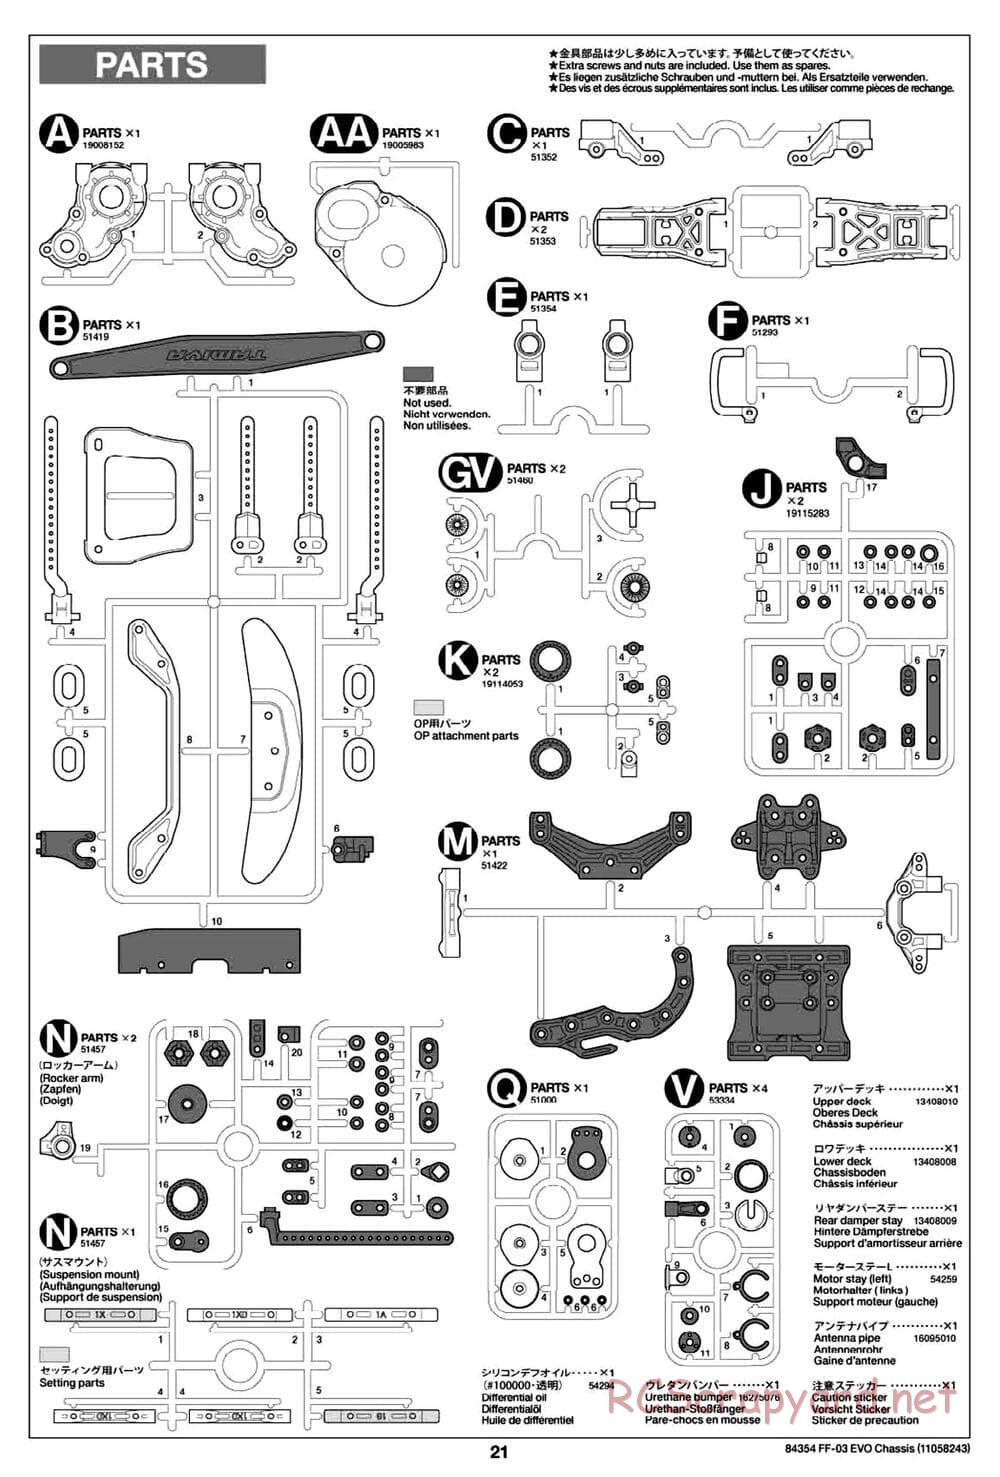 Tamiya - FF-03 Evo Chassis - Manual - Page 21